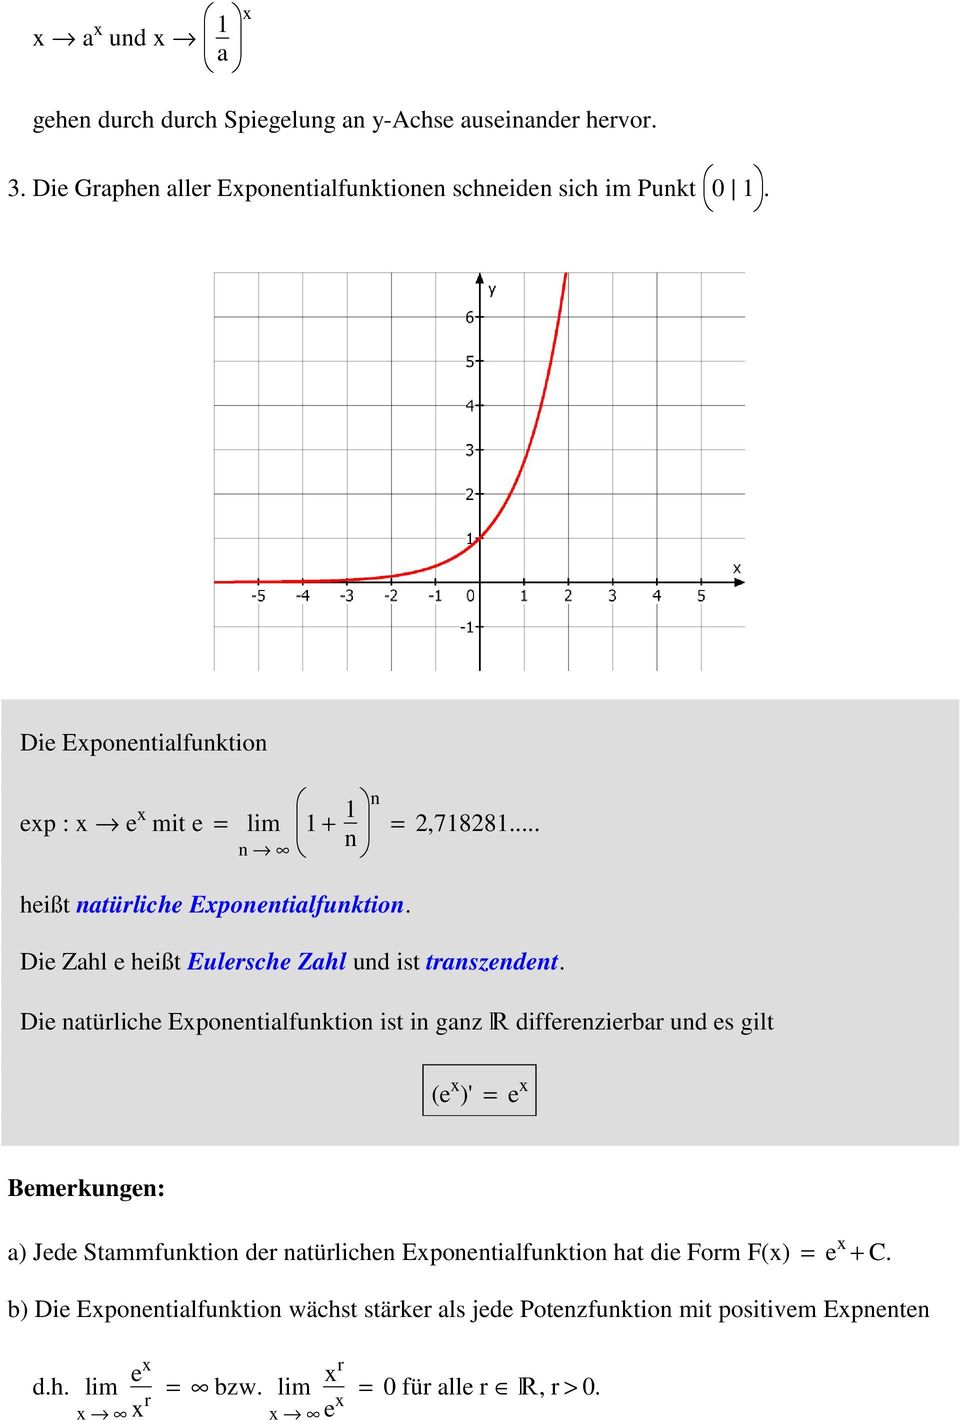 Die natürliche Exponentialfunktion ist in ganz R differenzierbar und es gilt (e x )' = e x Bemerkungen: a) Jede Stammfunktion der natürlichen Exponentialfunktion hat